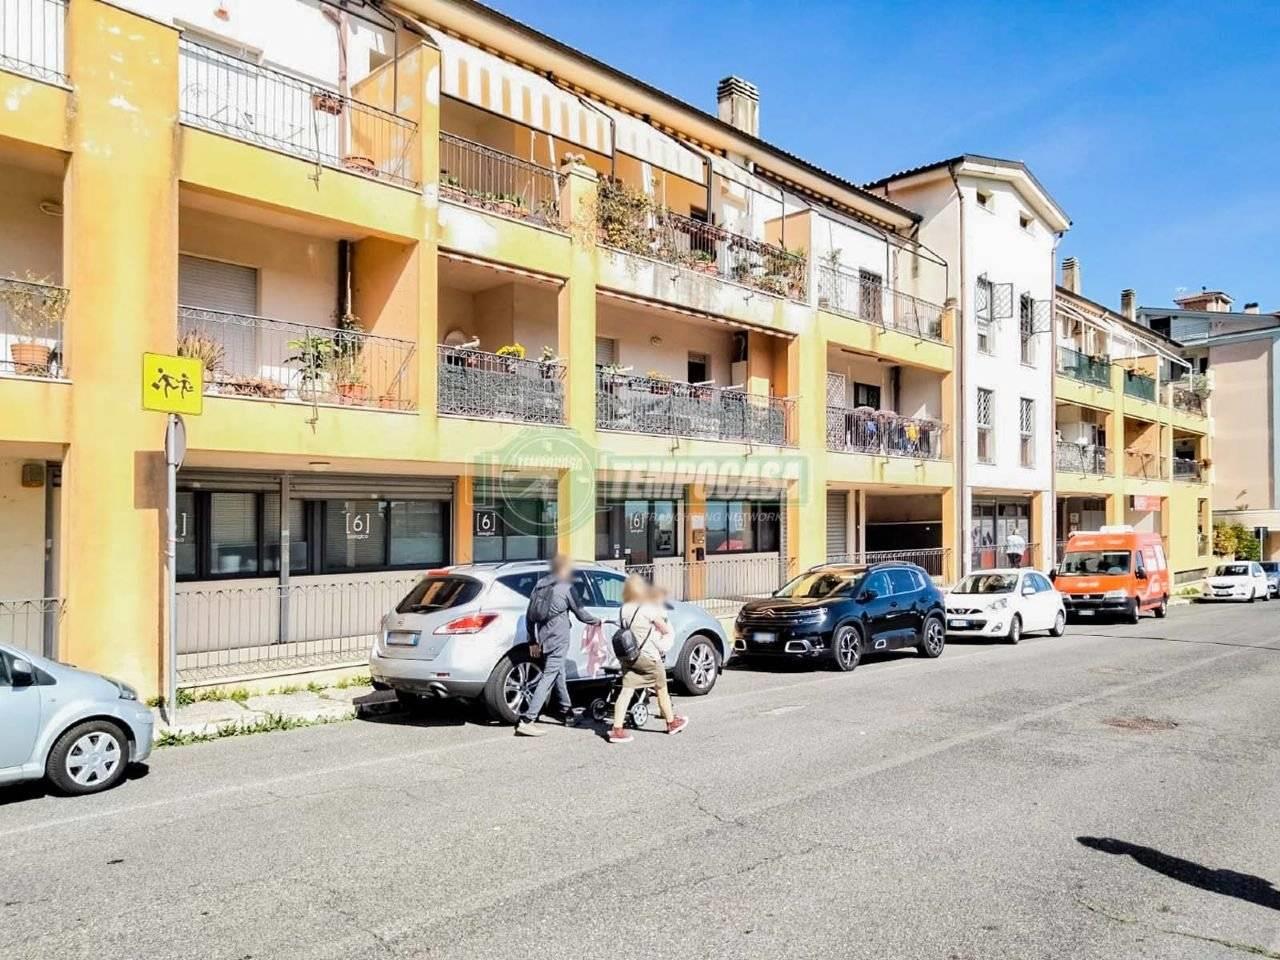 Appartamento Bilivello in Traversa Paolo Borsellino